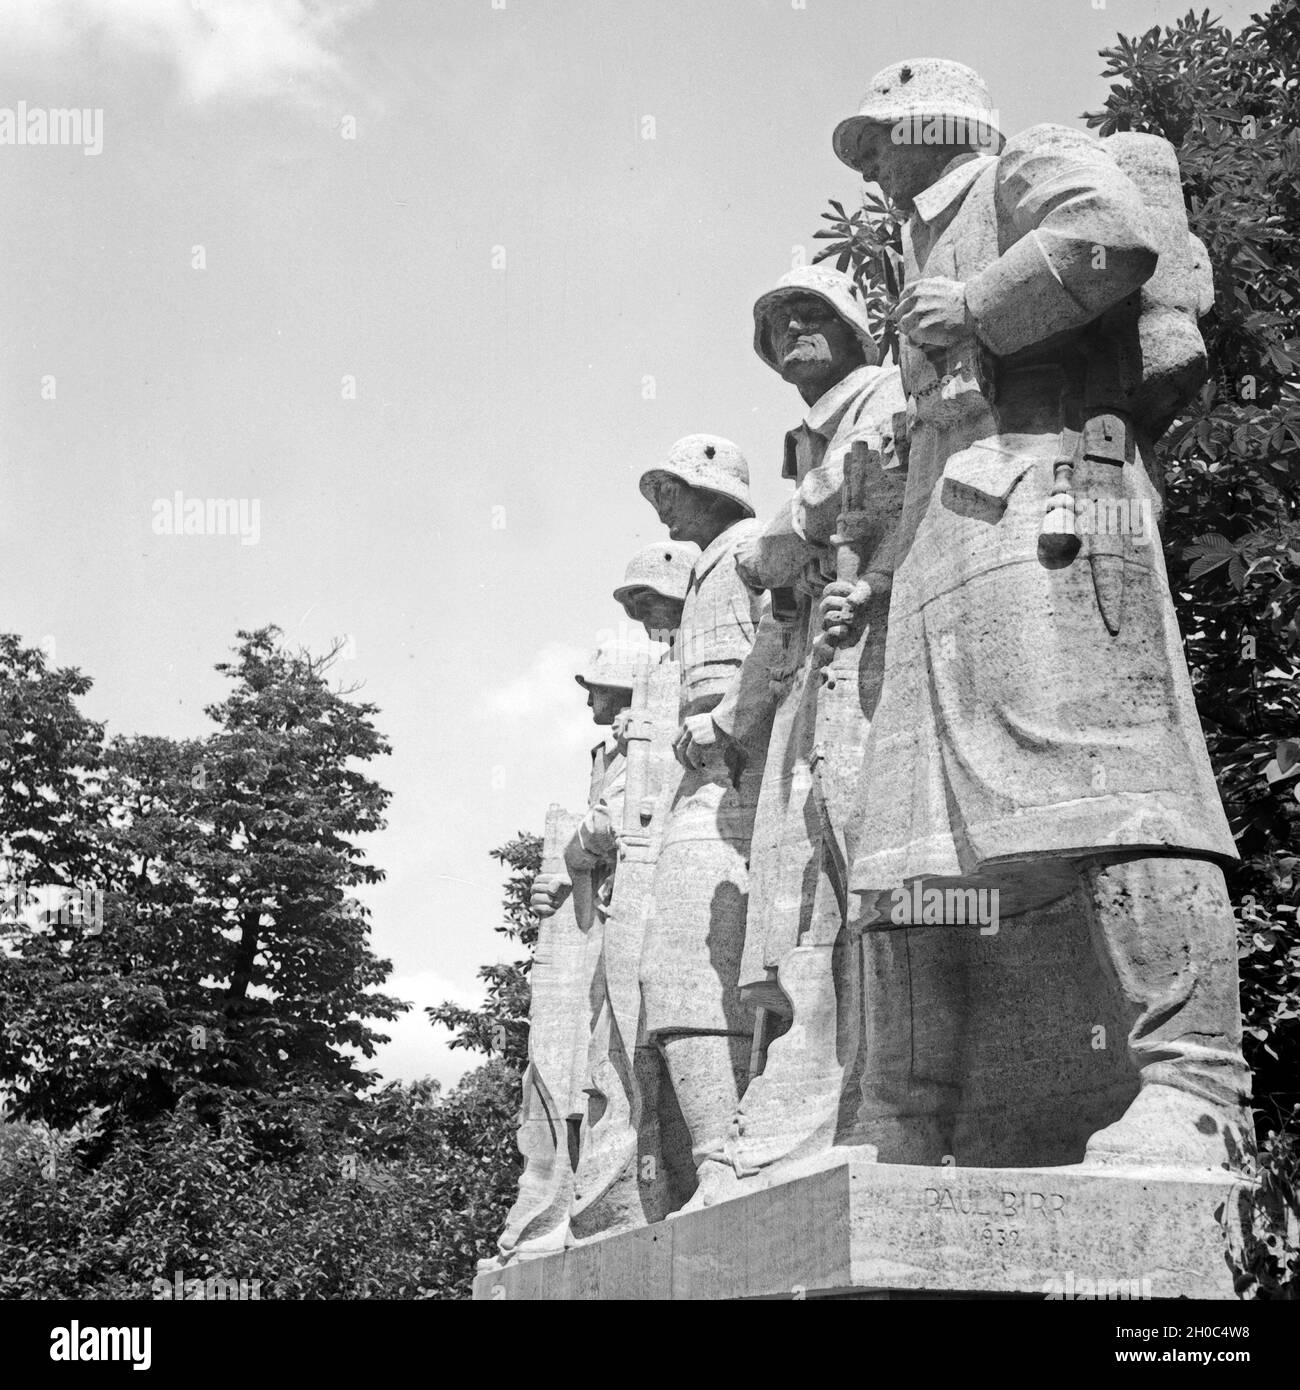 Denkmal für die Gefallenen des 1. Weltkrieges des Bildhauers Paul Birr in Worms, Deutschland 1930er Jahre. Denkmal für die Soldaten der WK1 von Bildhauer Paul Birr in Worms, Deutschland 1930. Stockfoto